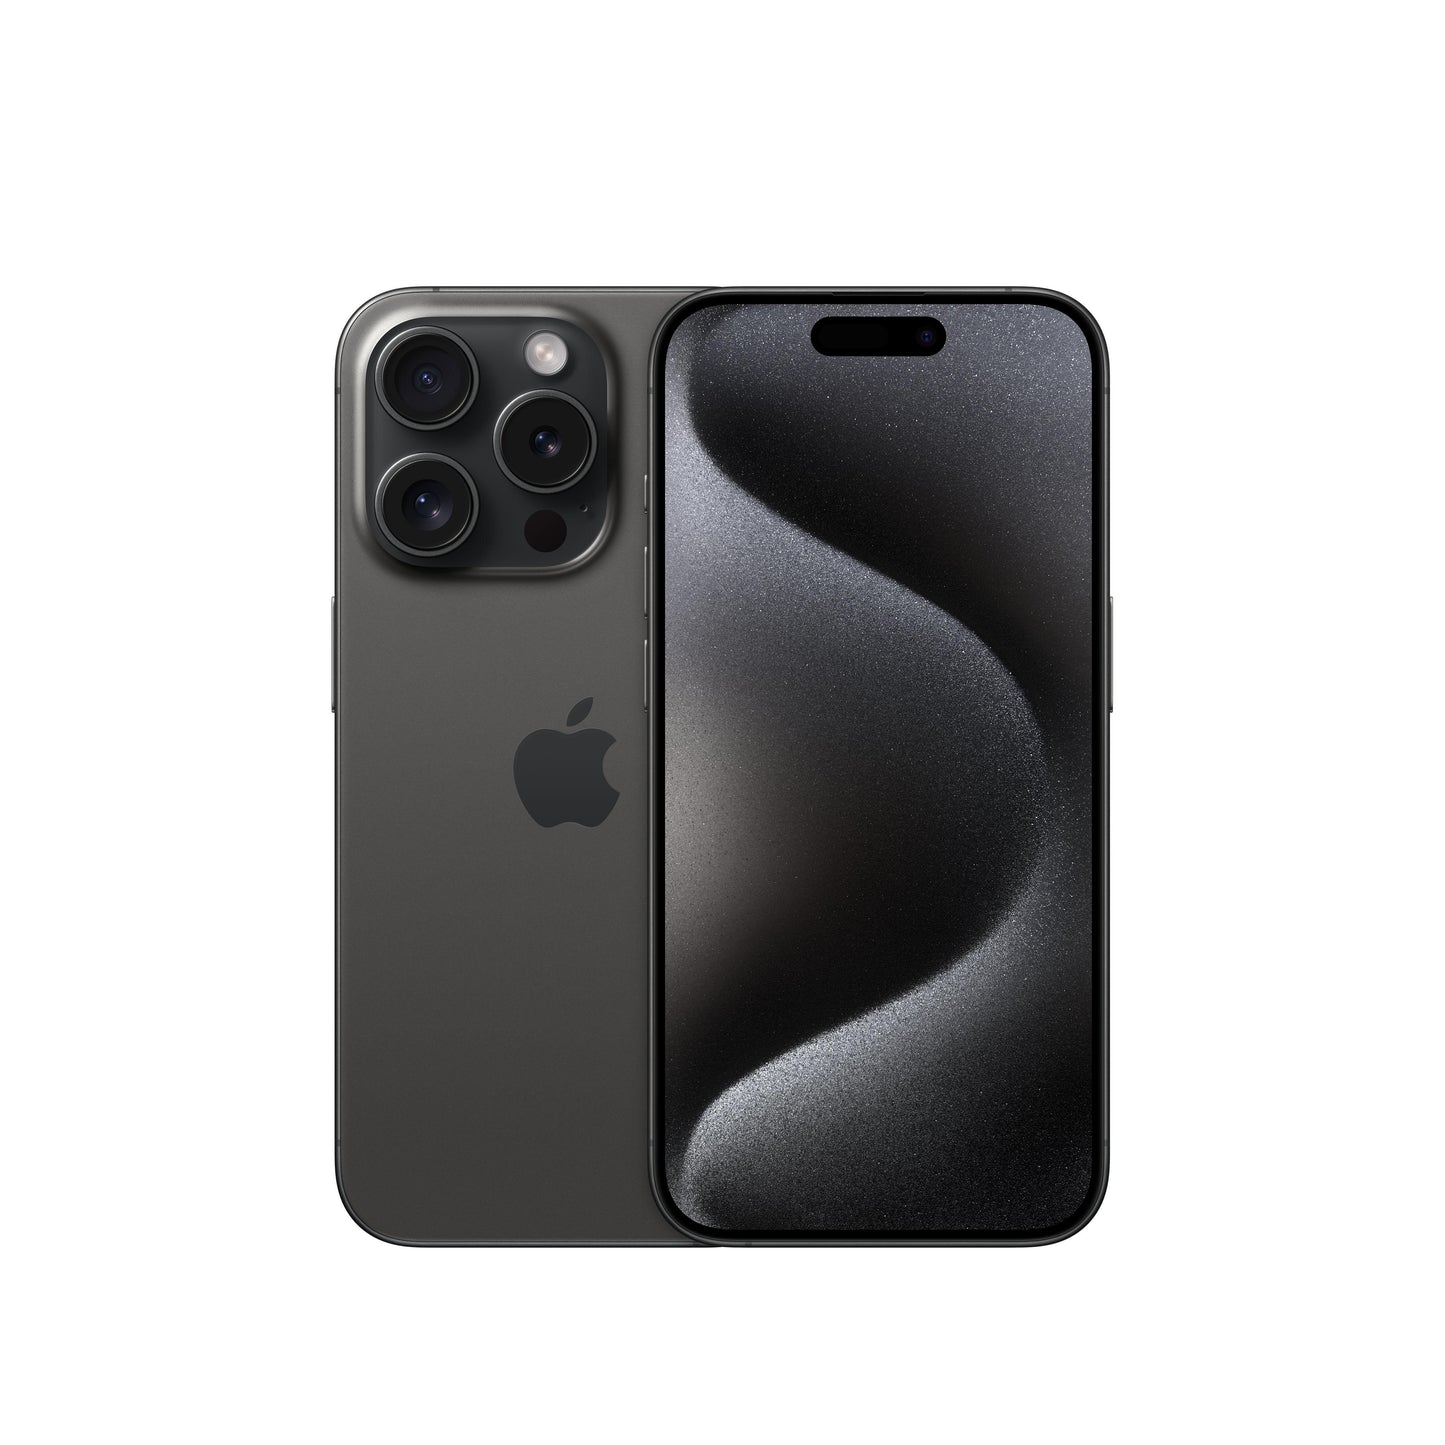 iPhone 15 Pro 256 GB Titanio negro